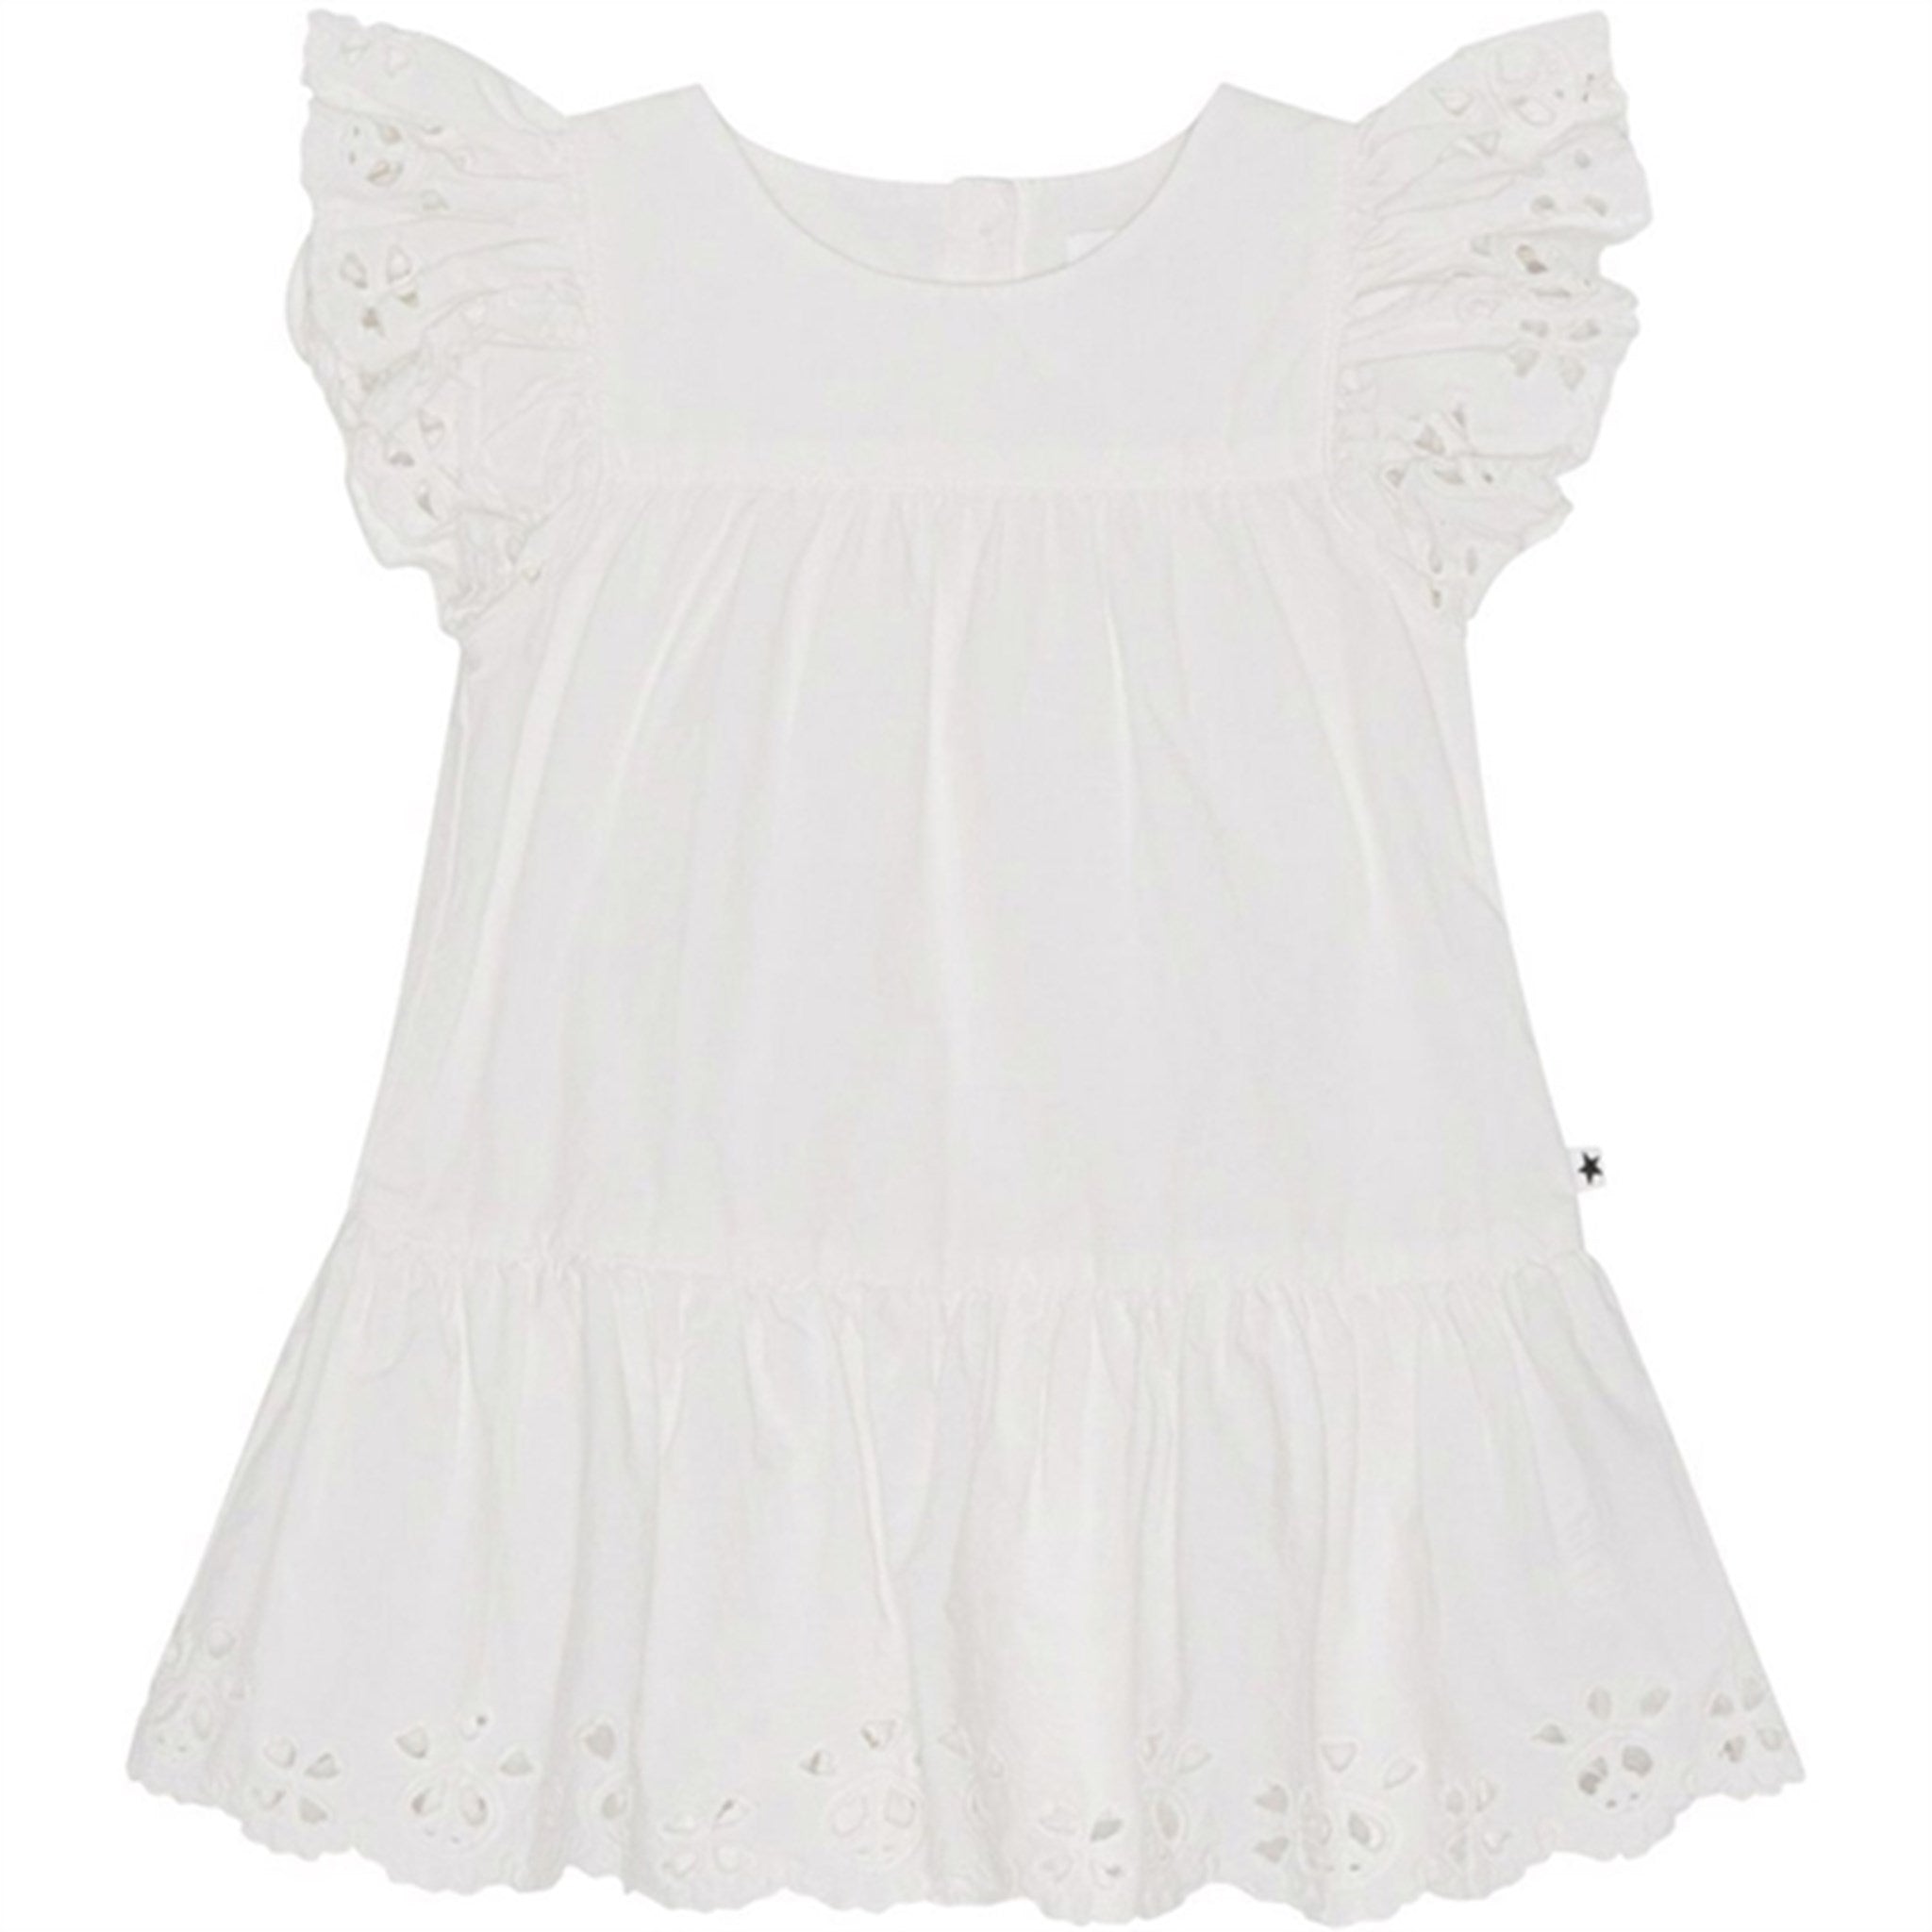 Molo White Cammas Dress